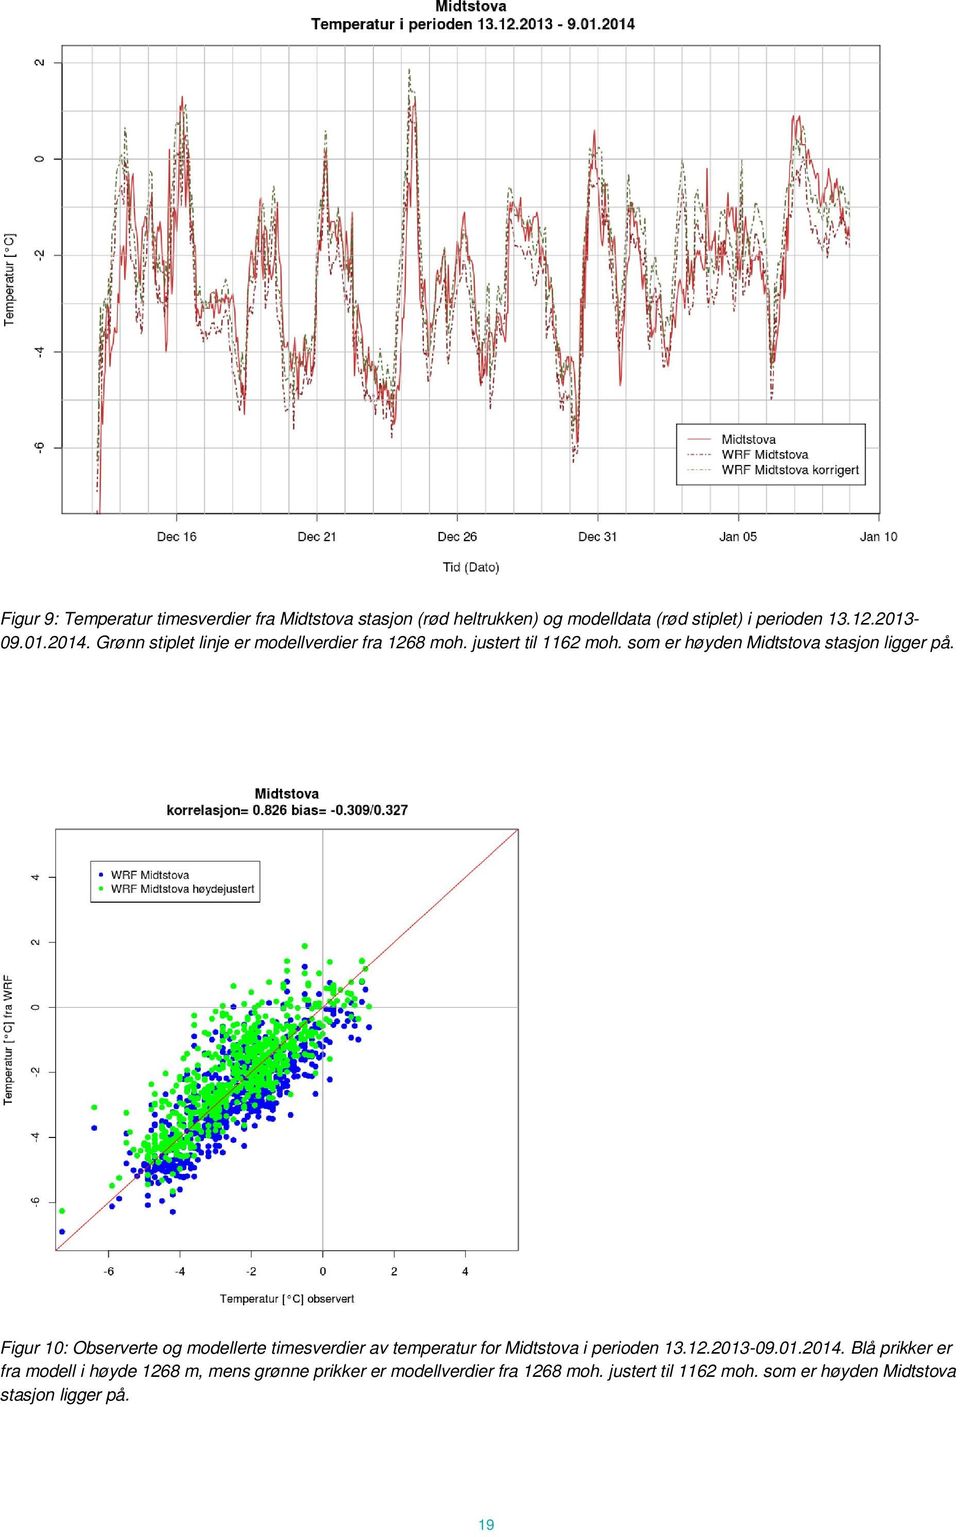 Figur 10: Observerte og modellerte timesverdier av temperatur for Midtstova i perioden 13.12.2013-09.01.2014.